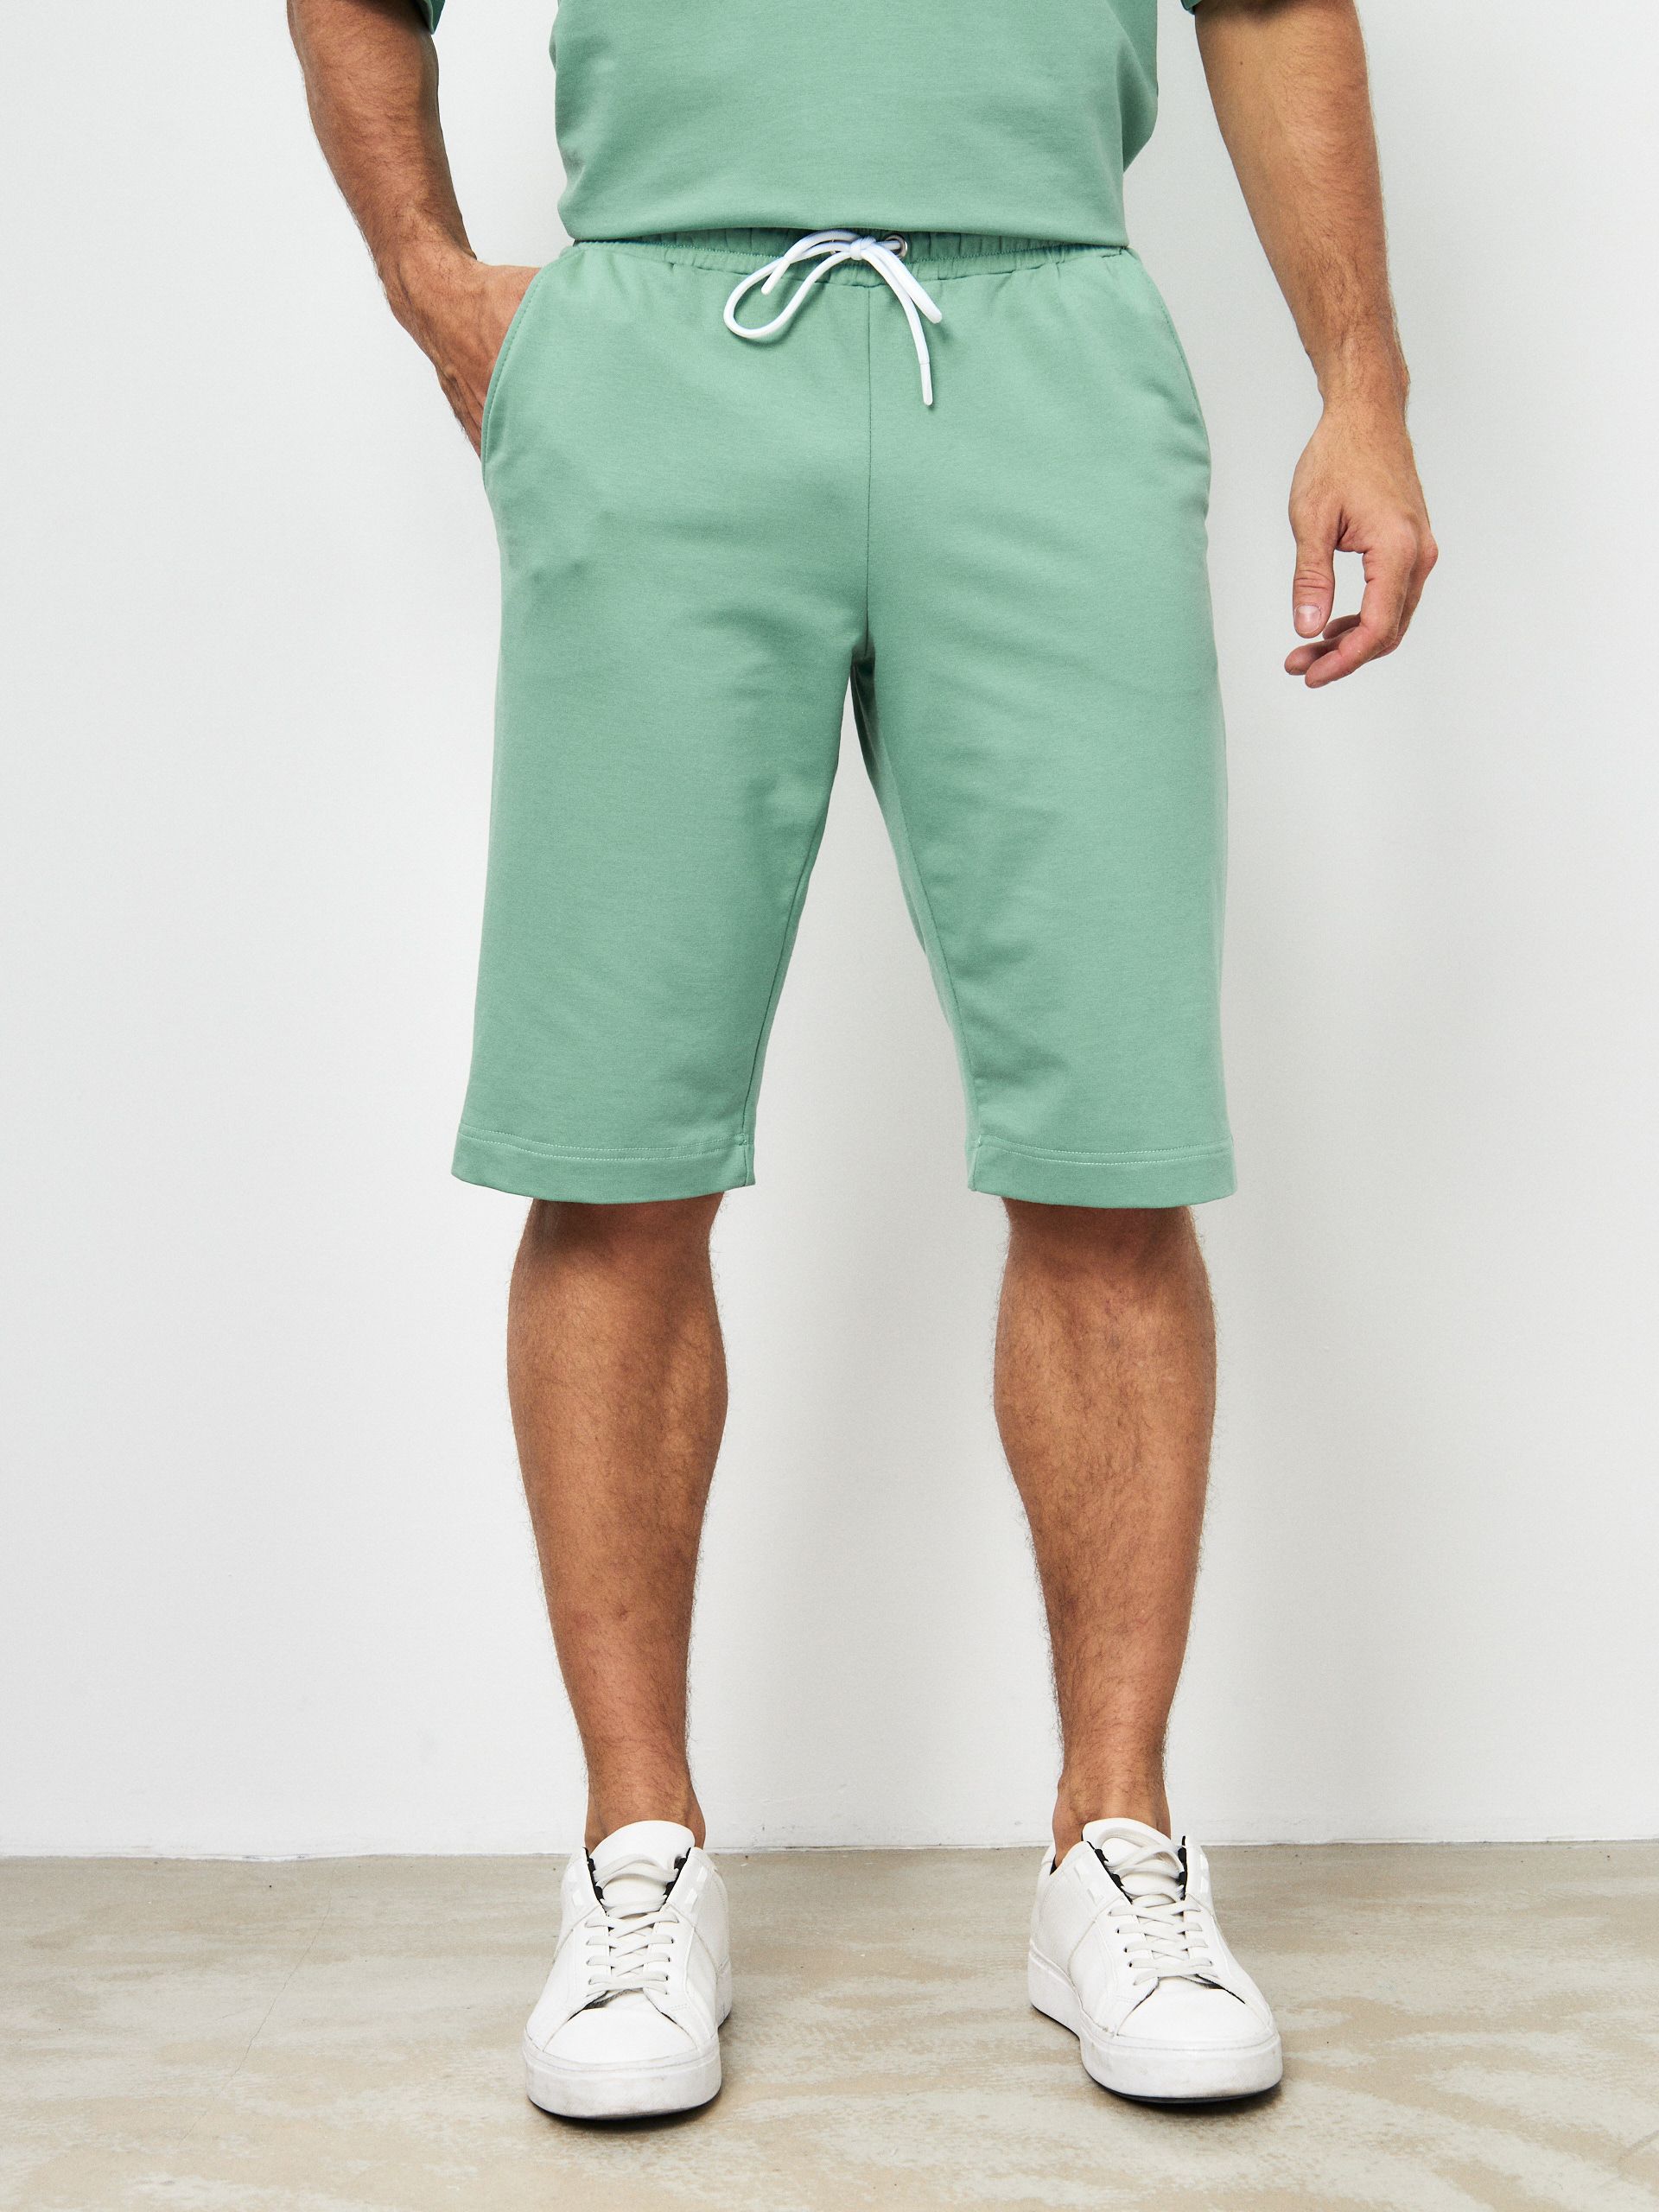 Повседневные шорты мужские MOM №1 MOM-88-3180 зеленые S